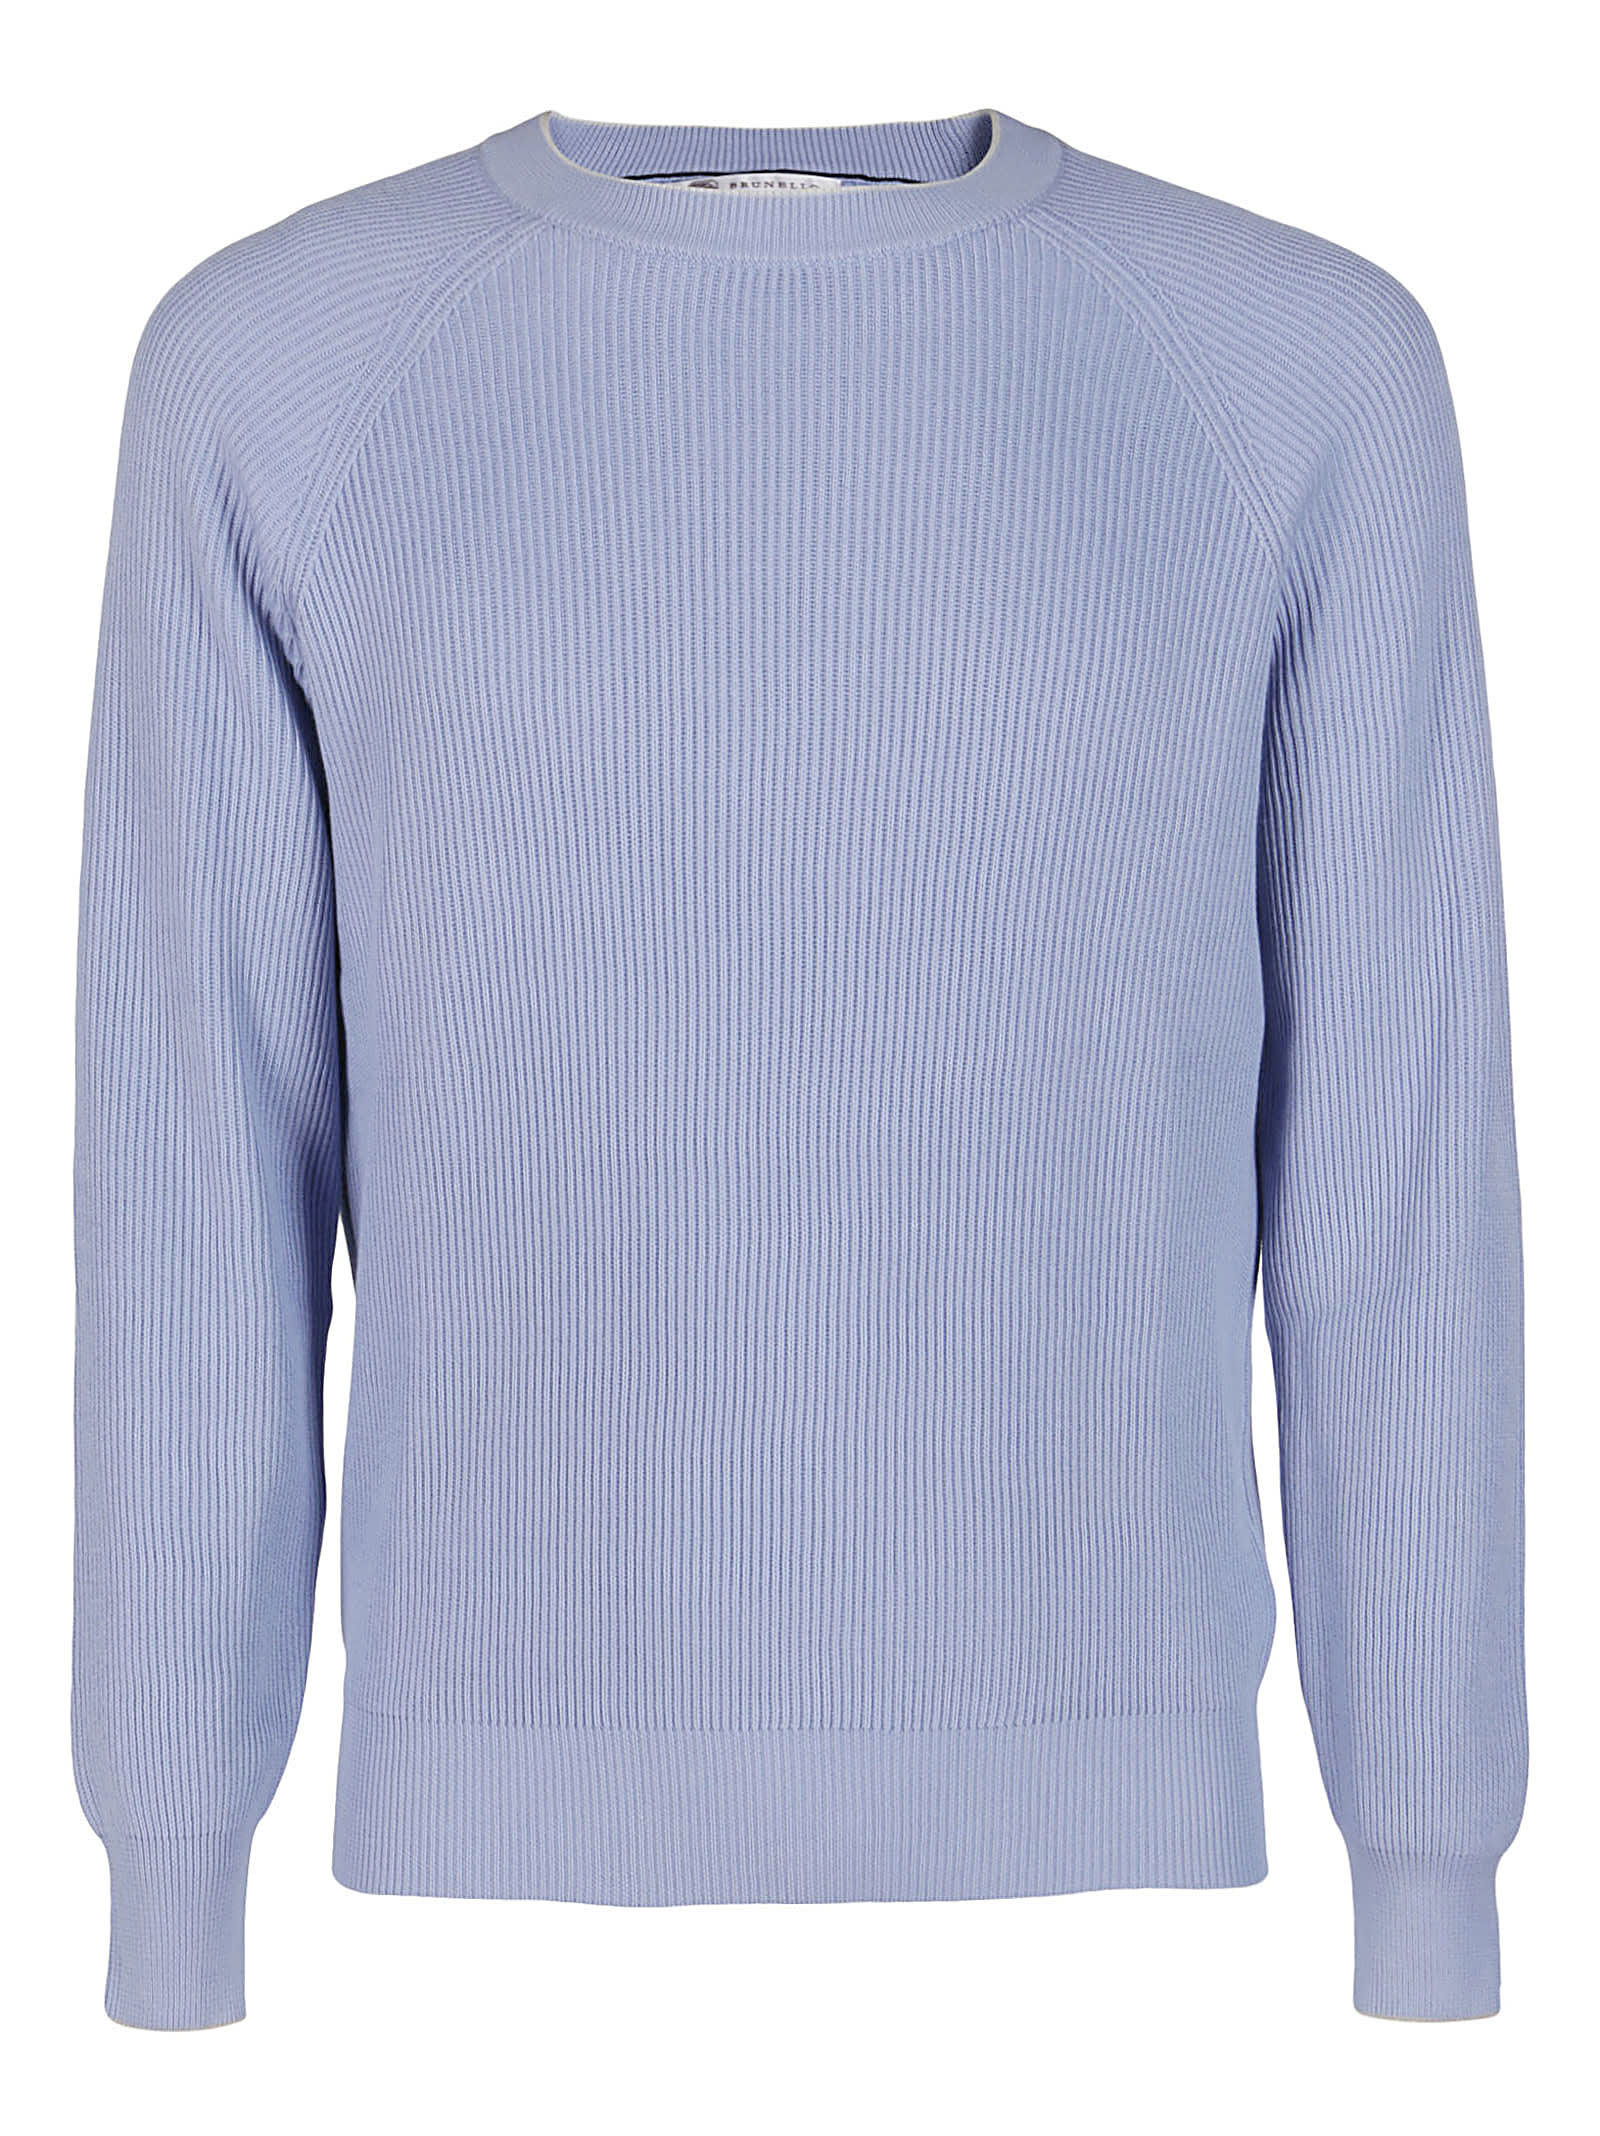 Brunello Cucinelli Light Blue Cotton Sweatshirt